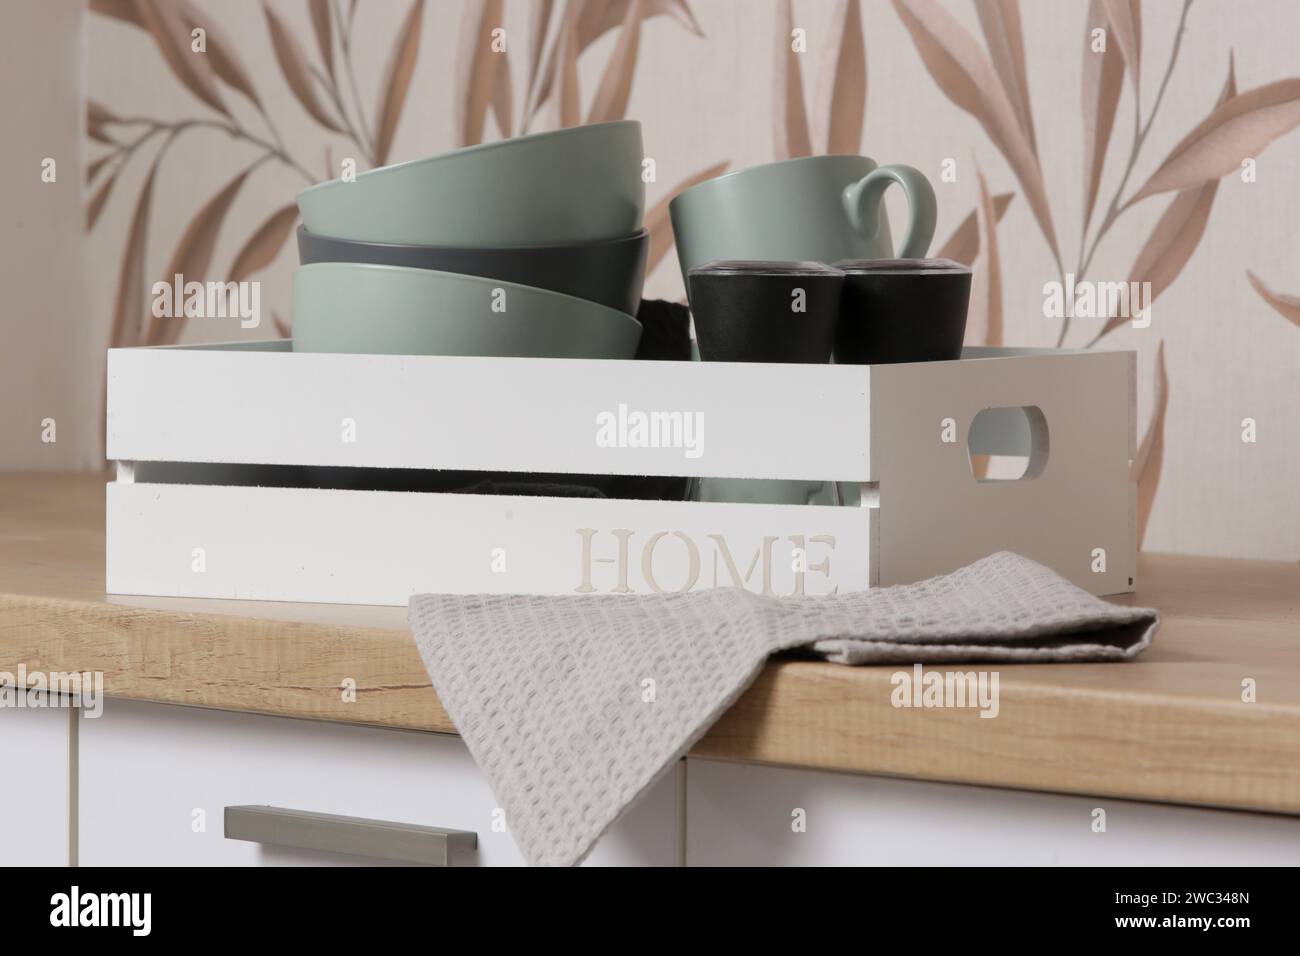 Ciotole e tazze in ceramica nella scatola di legno sul bancone della cucina, concetto di organizzazione della vita domestica Foto Stock